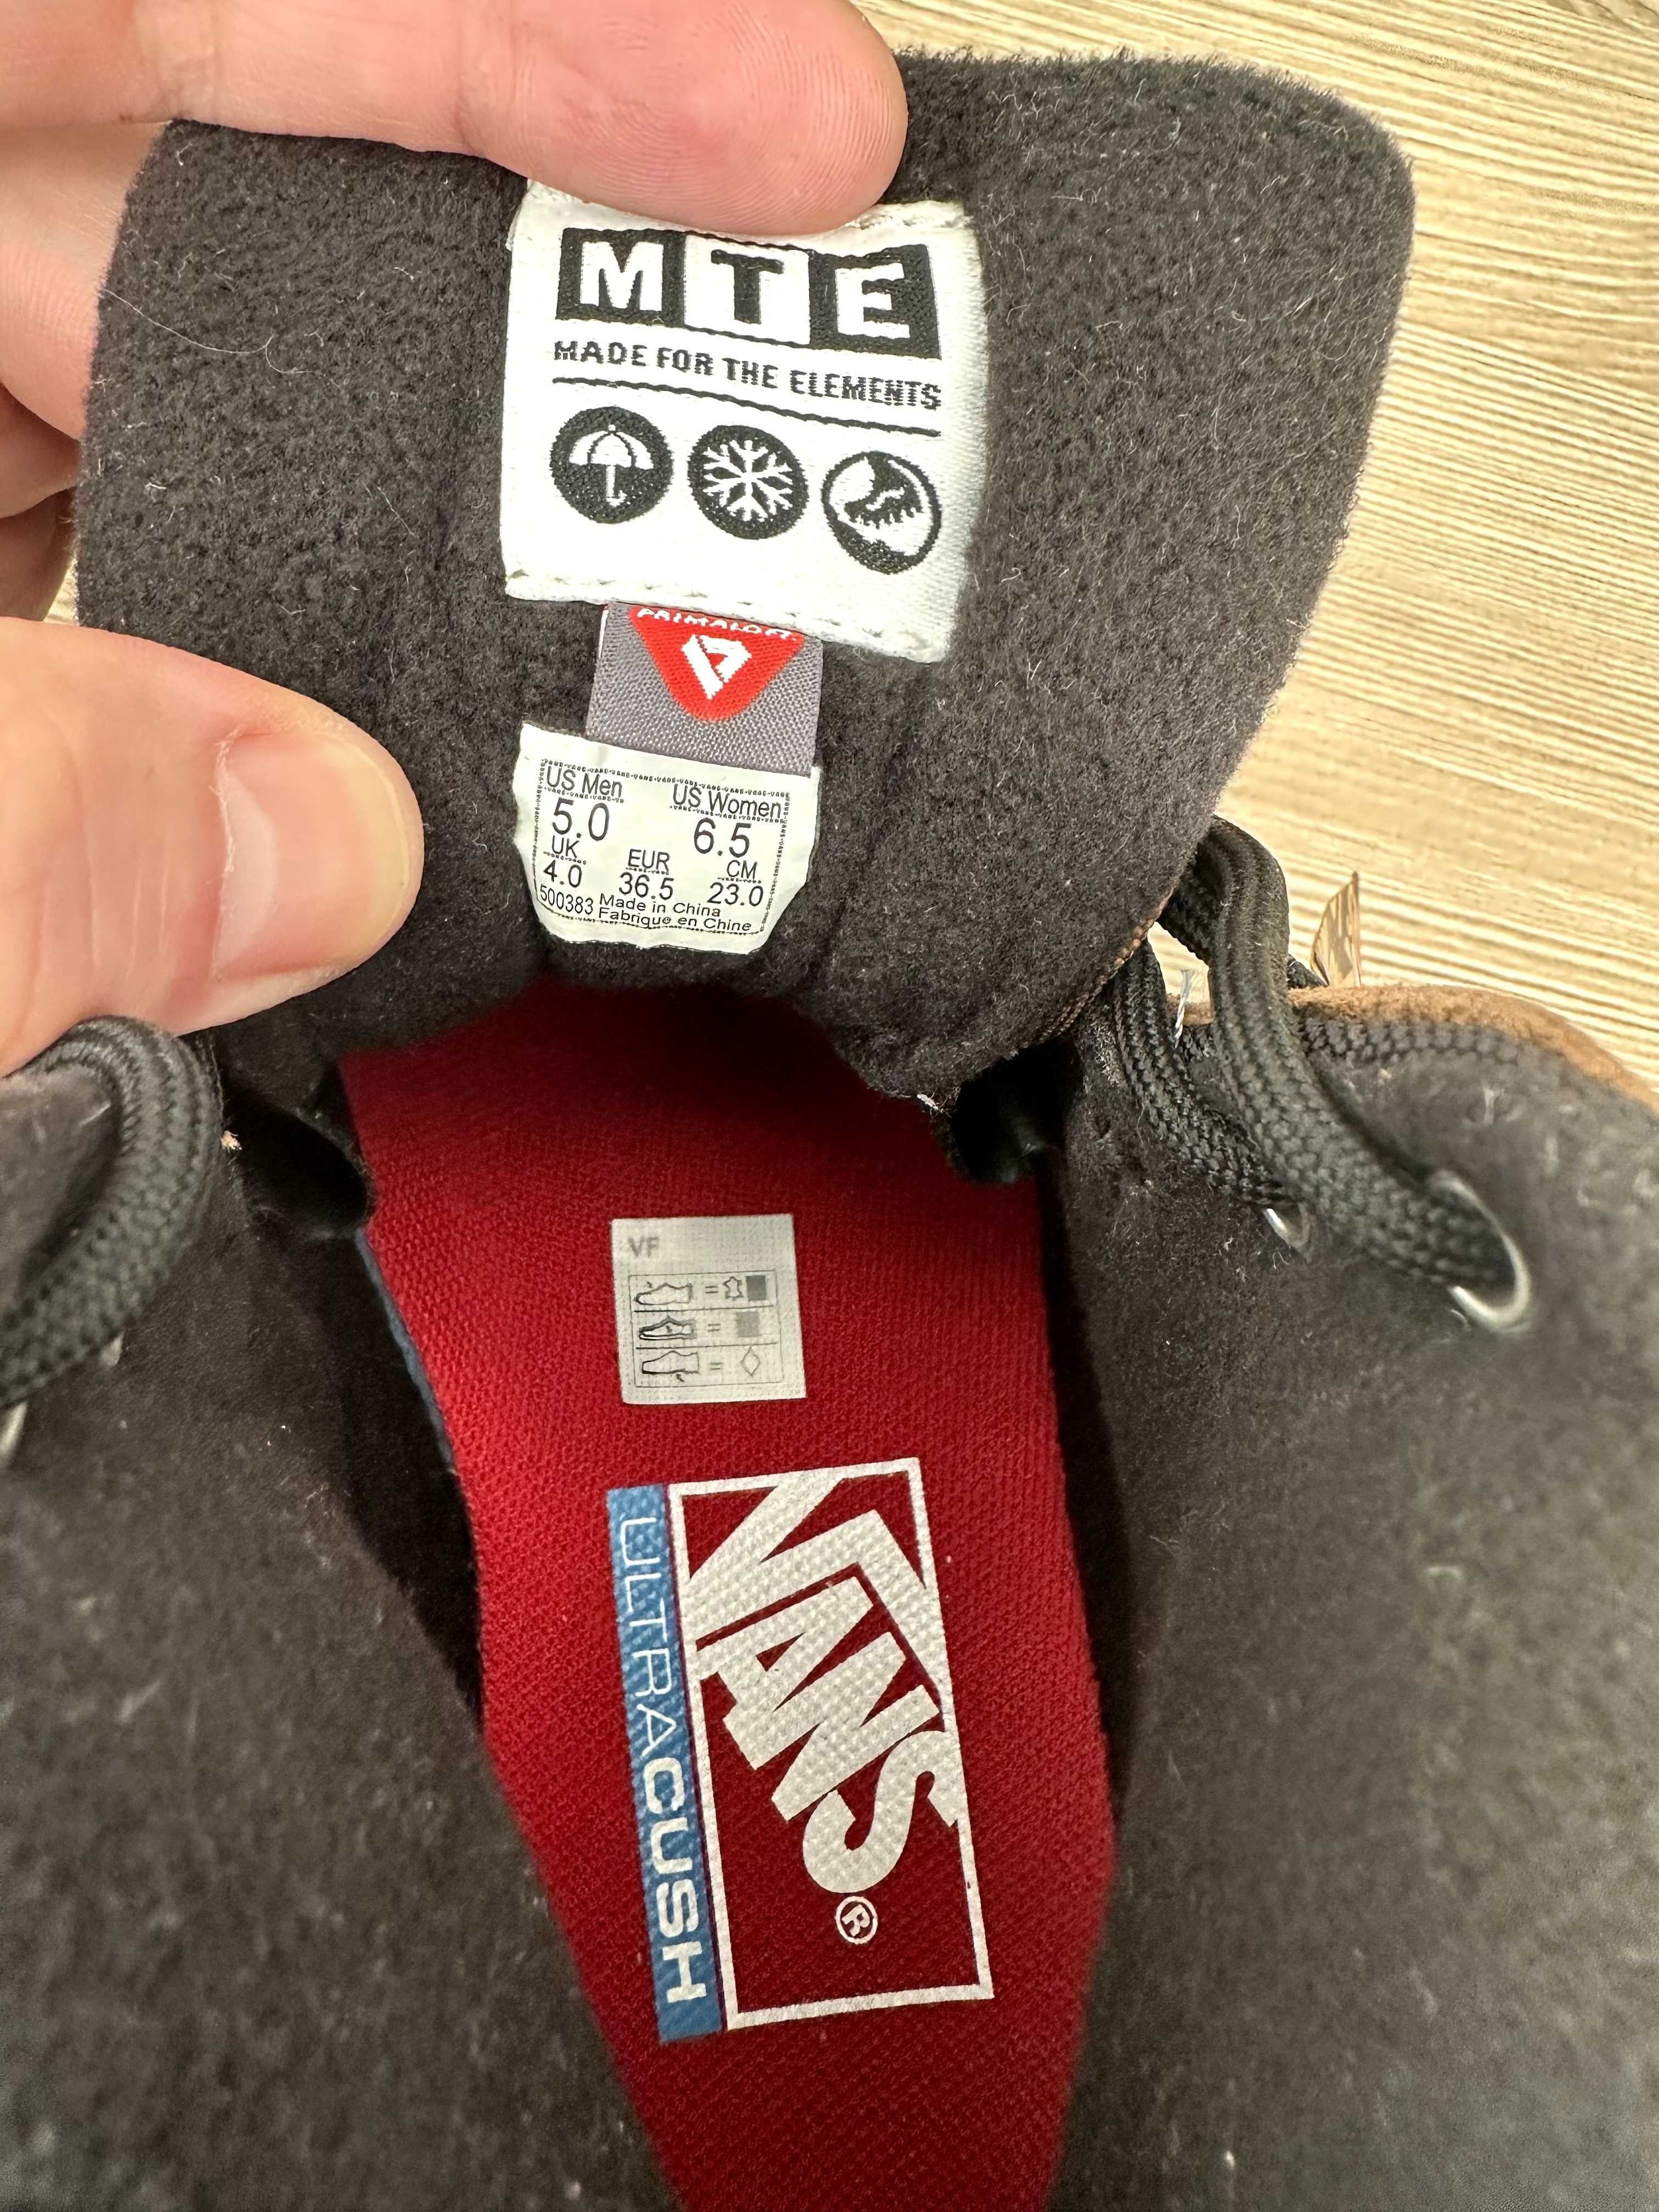 VANS ultrarange exo Hi MTE-1 sneakers broun size 36,5 eur розмір НОВІ